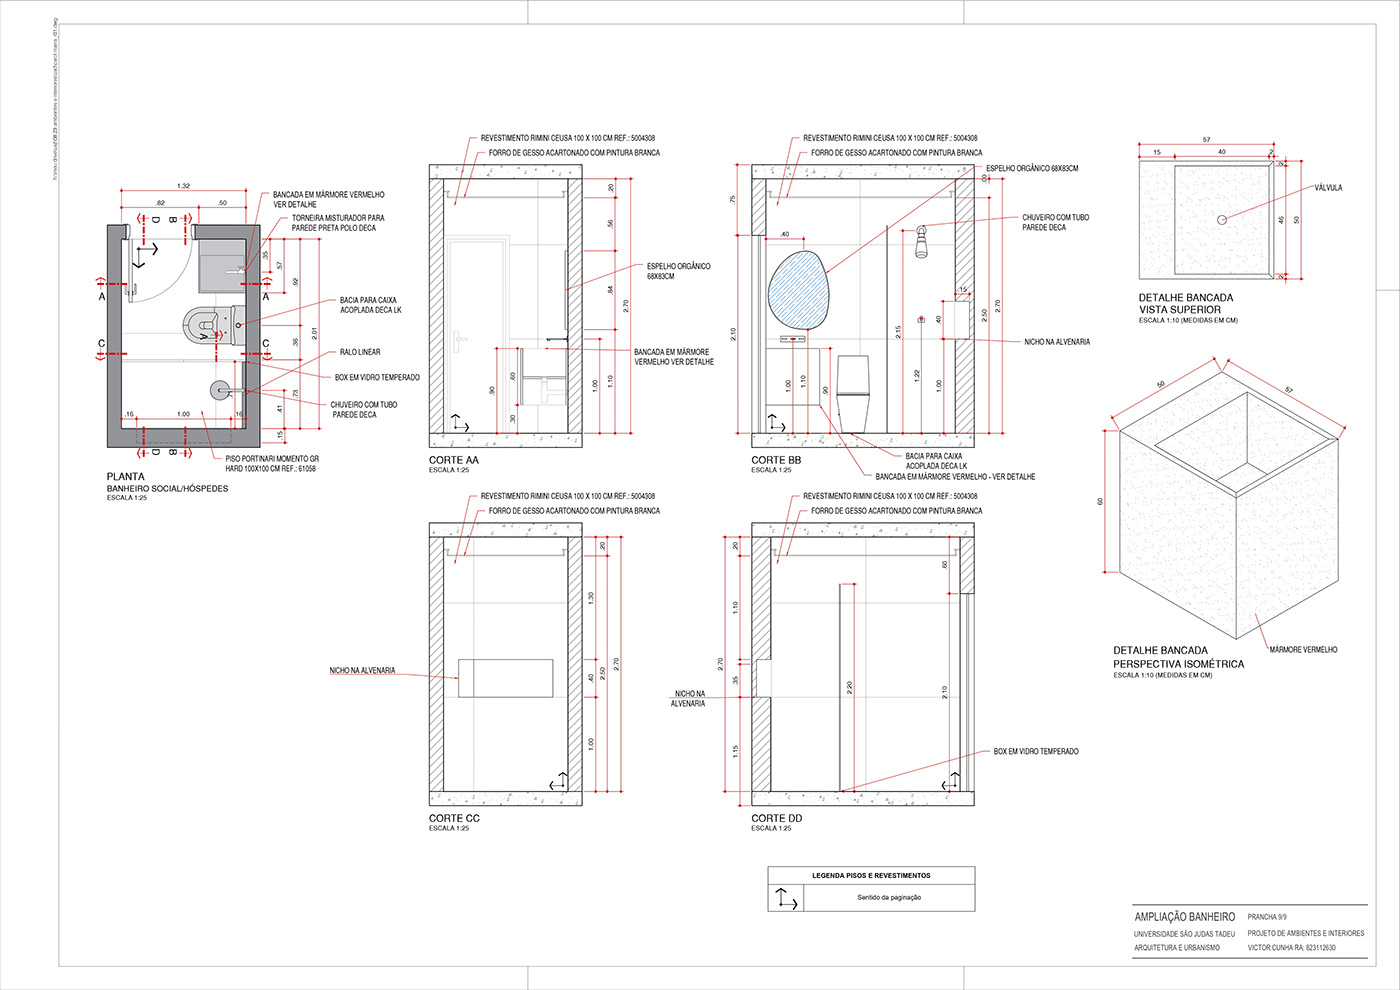 Interior design de interiores ARQUITETURA Archictecture Render 3D detalhamento